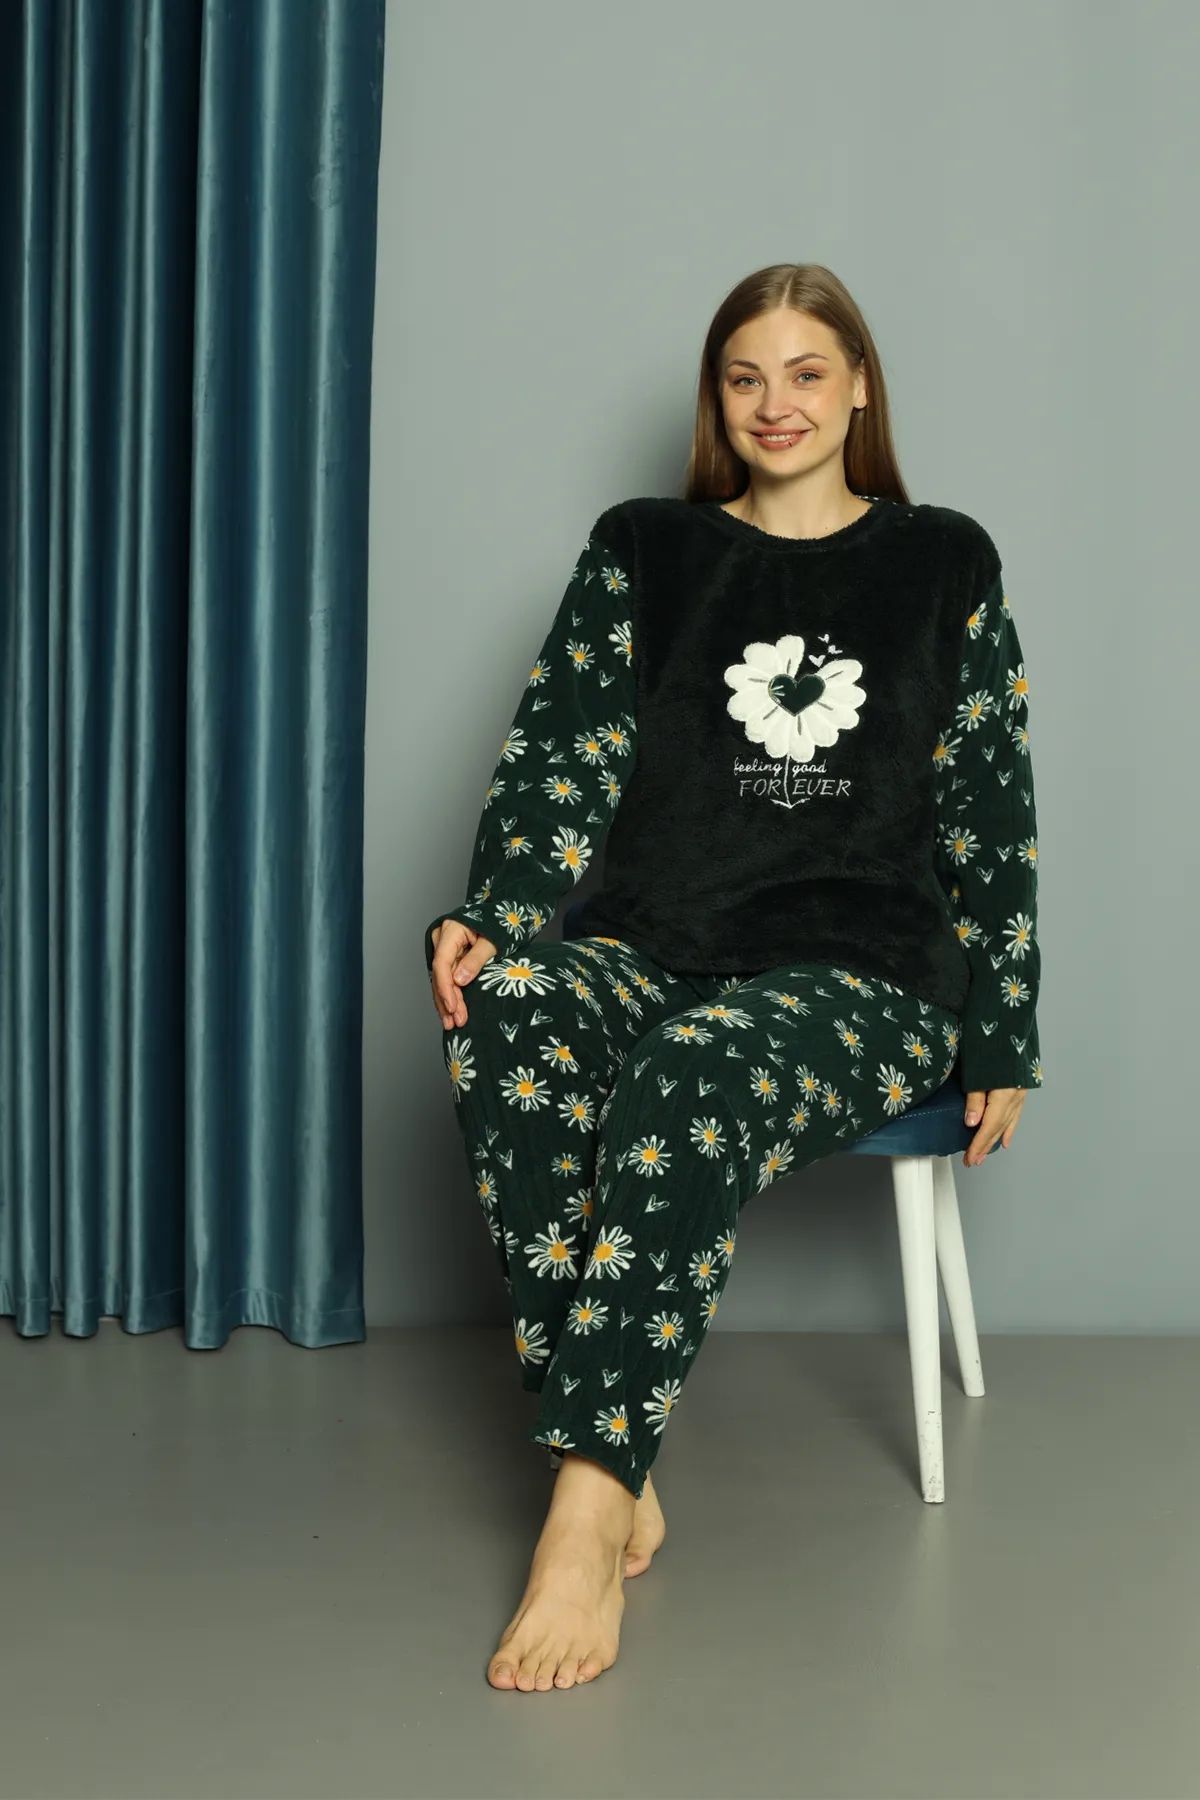 SuFd E Ticaret Büyük Beden Kışlık Polar Pijama Takımı Peluş Desenli Takım 34012 Bir Beden Büyük Alınız